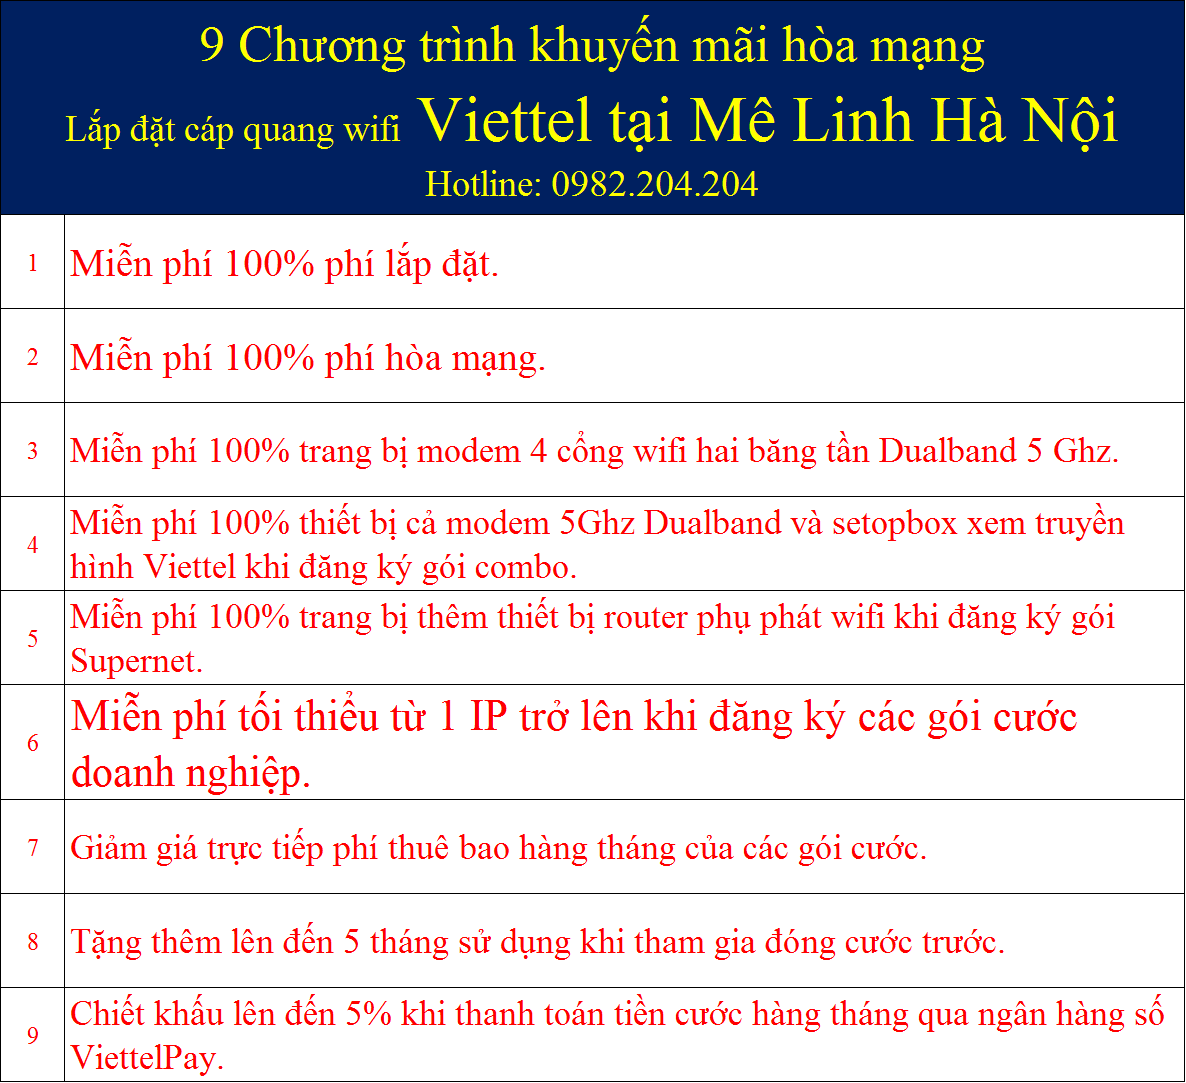 9 khuyến mãi đăng ký mạng Viettel Mê Linh Hà Nội.